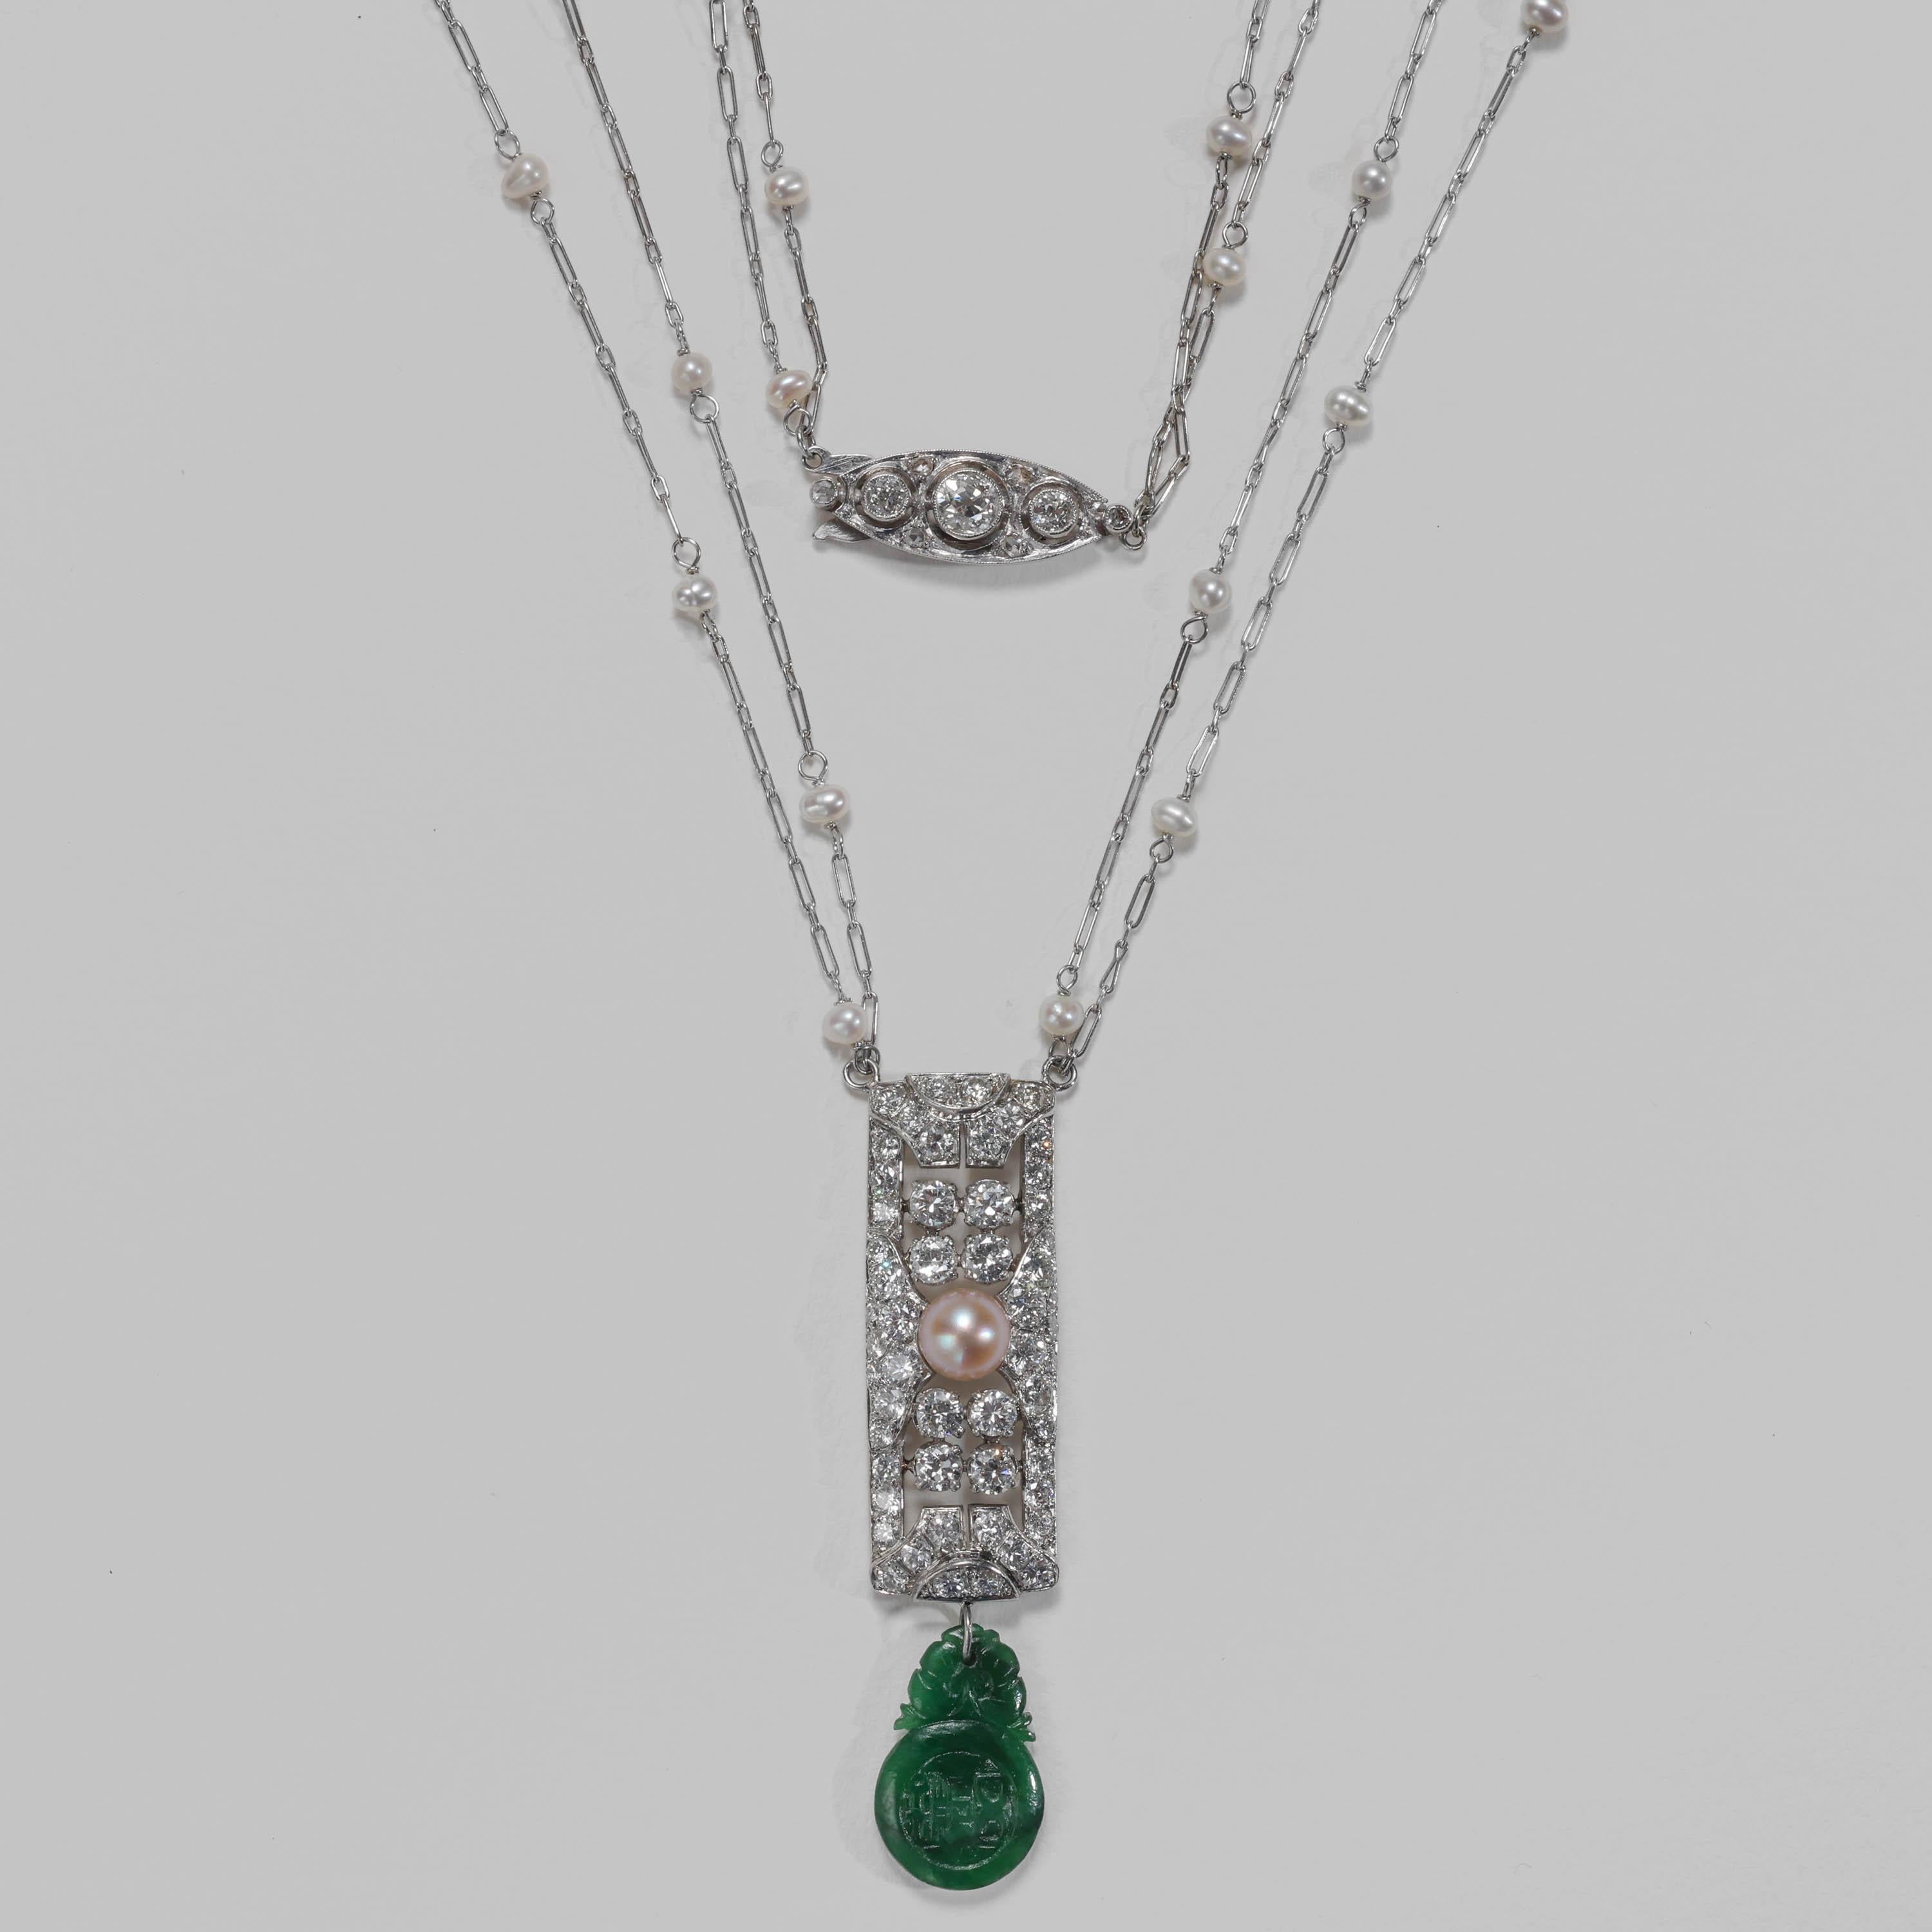 Dieses Art-Déco-Halsband, das mit alten Diamanten besetzt ist, zeigt zwei der seltensten und kostbarsten Edelsteine der Welt: eine natürliche Perle und eine natürliche, unbehandelte Jadeit-Jade. Das schlichte und dauerhaft stilvolle